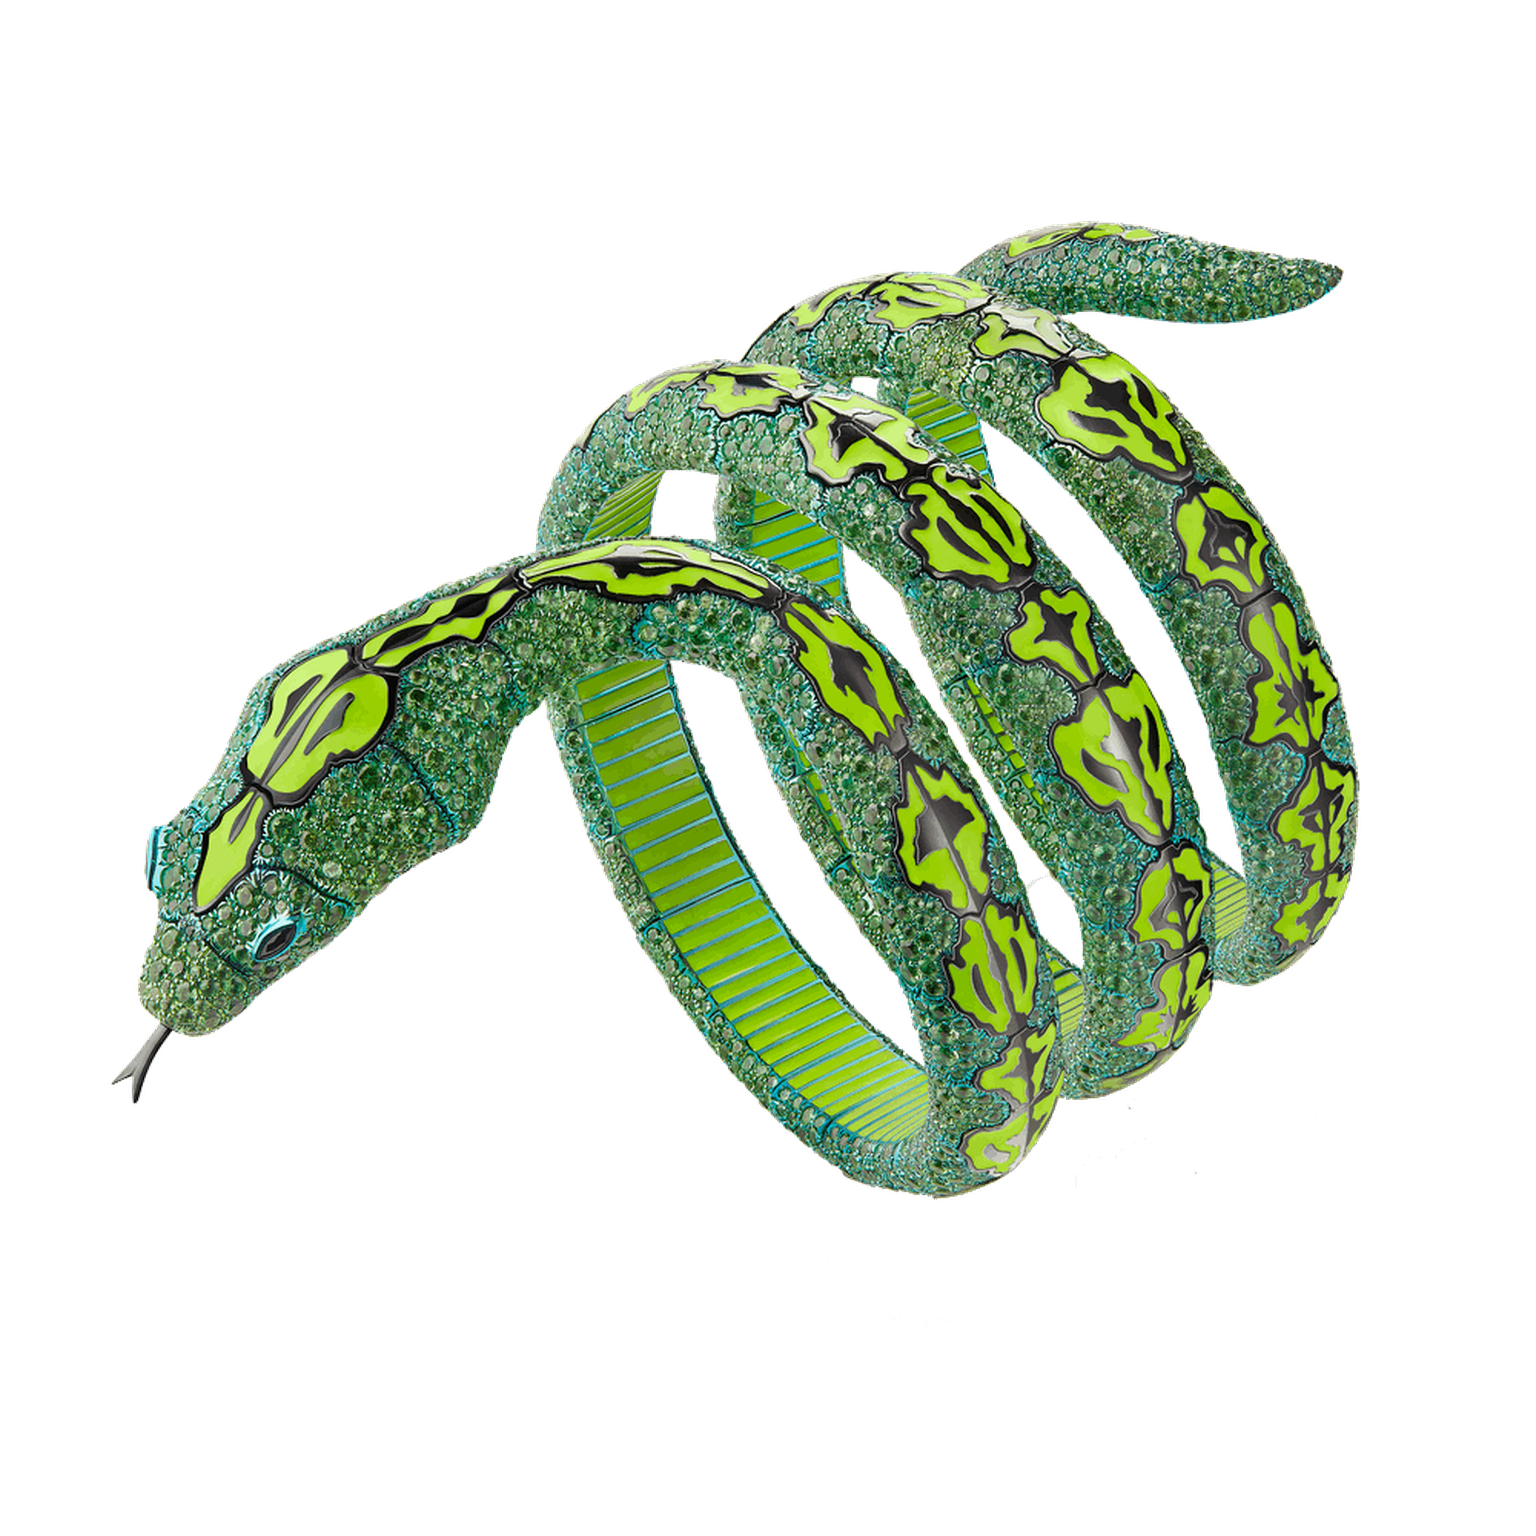 Ailleurs Serpent bracelet by Boucheron